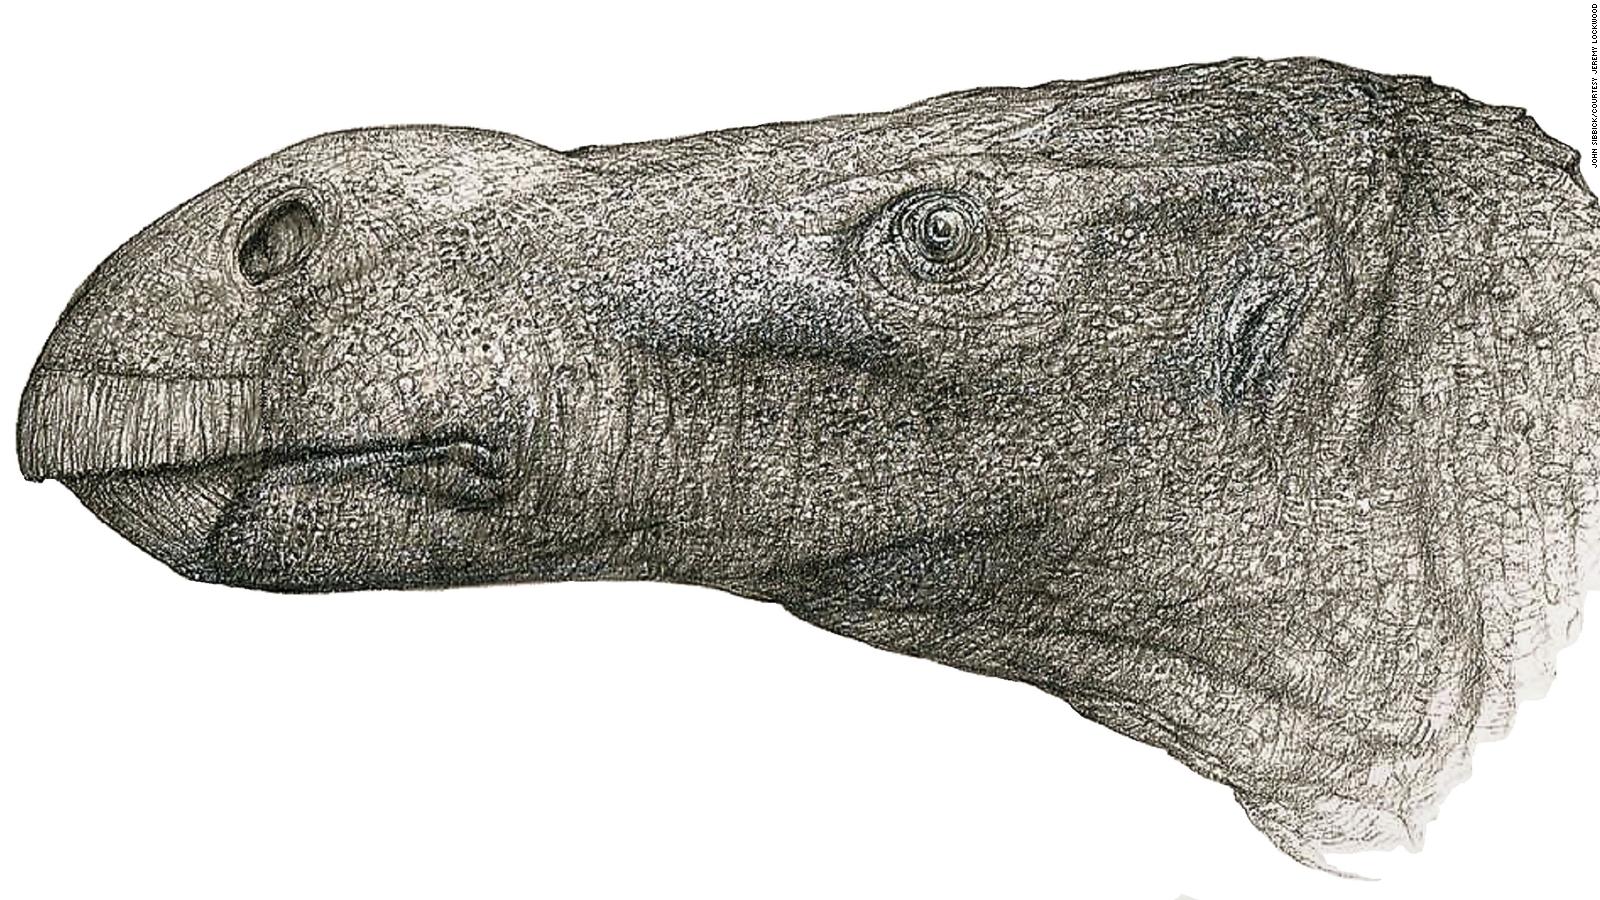 New dinosaur discovered decades after bones were found CNN